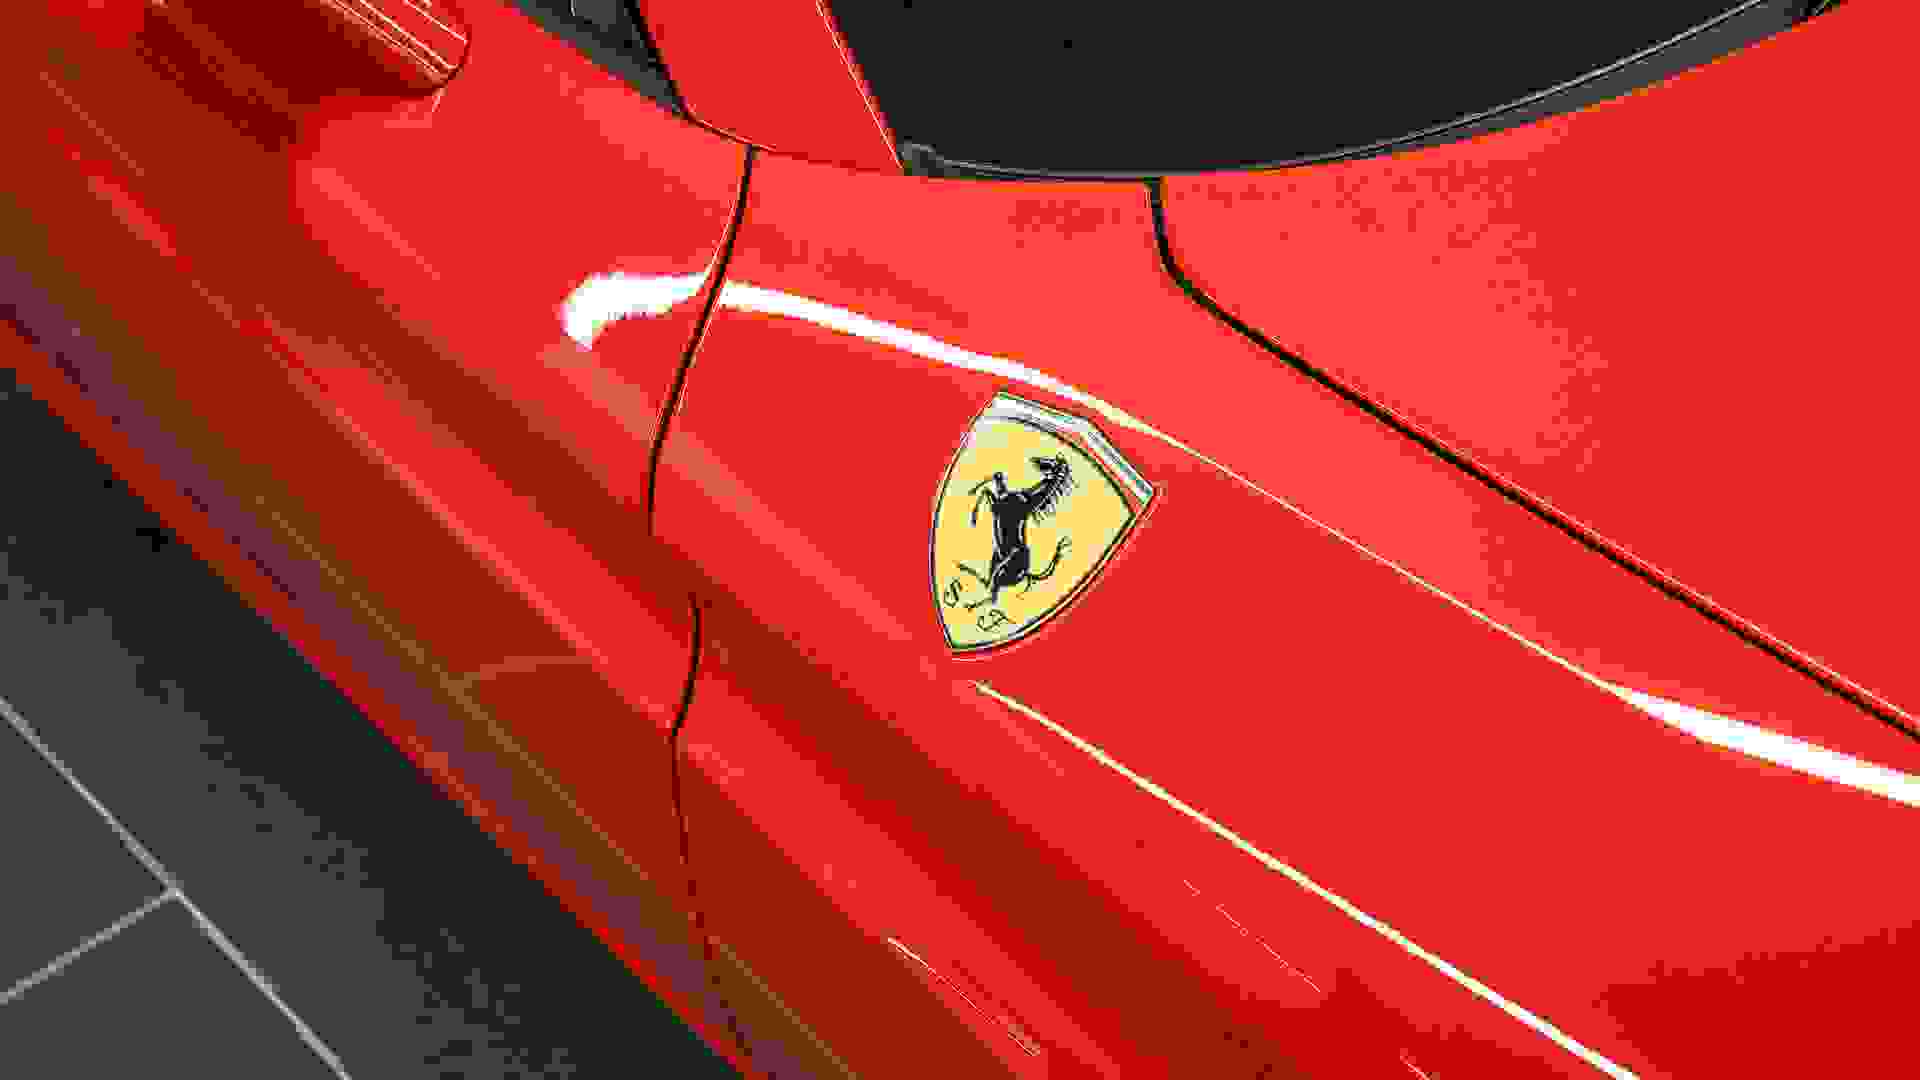 Ferrari California Photo 118da56a-6e9f-4227-b5ed-b498800e0071.jpg